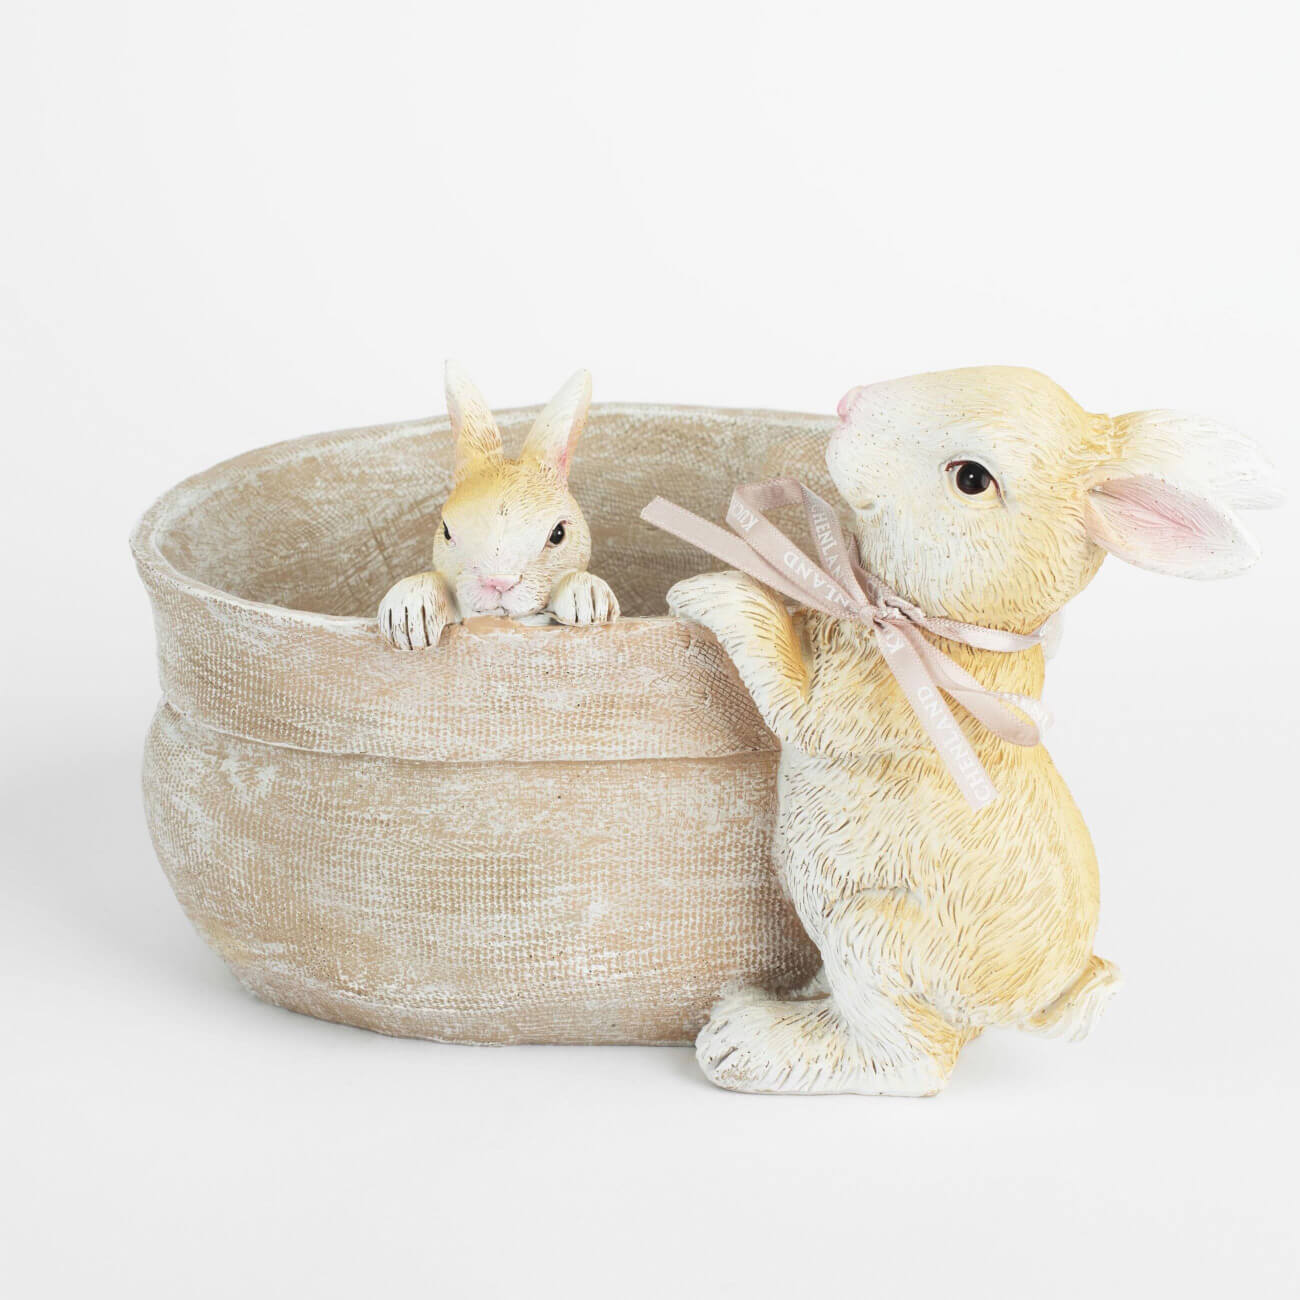 Ваза декоративная, 20х14 см, полирезин, бежевая, Кролики на мешке, Natural Easter изображение № 1